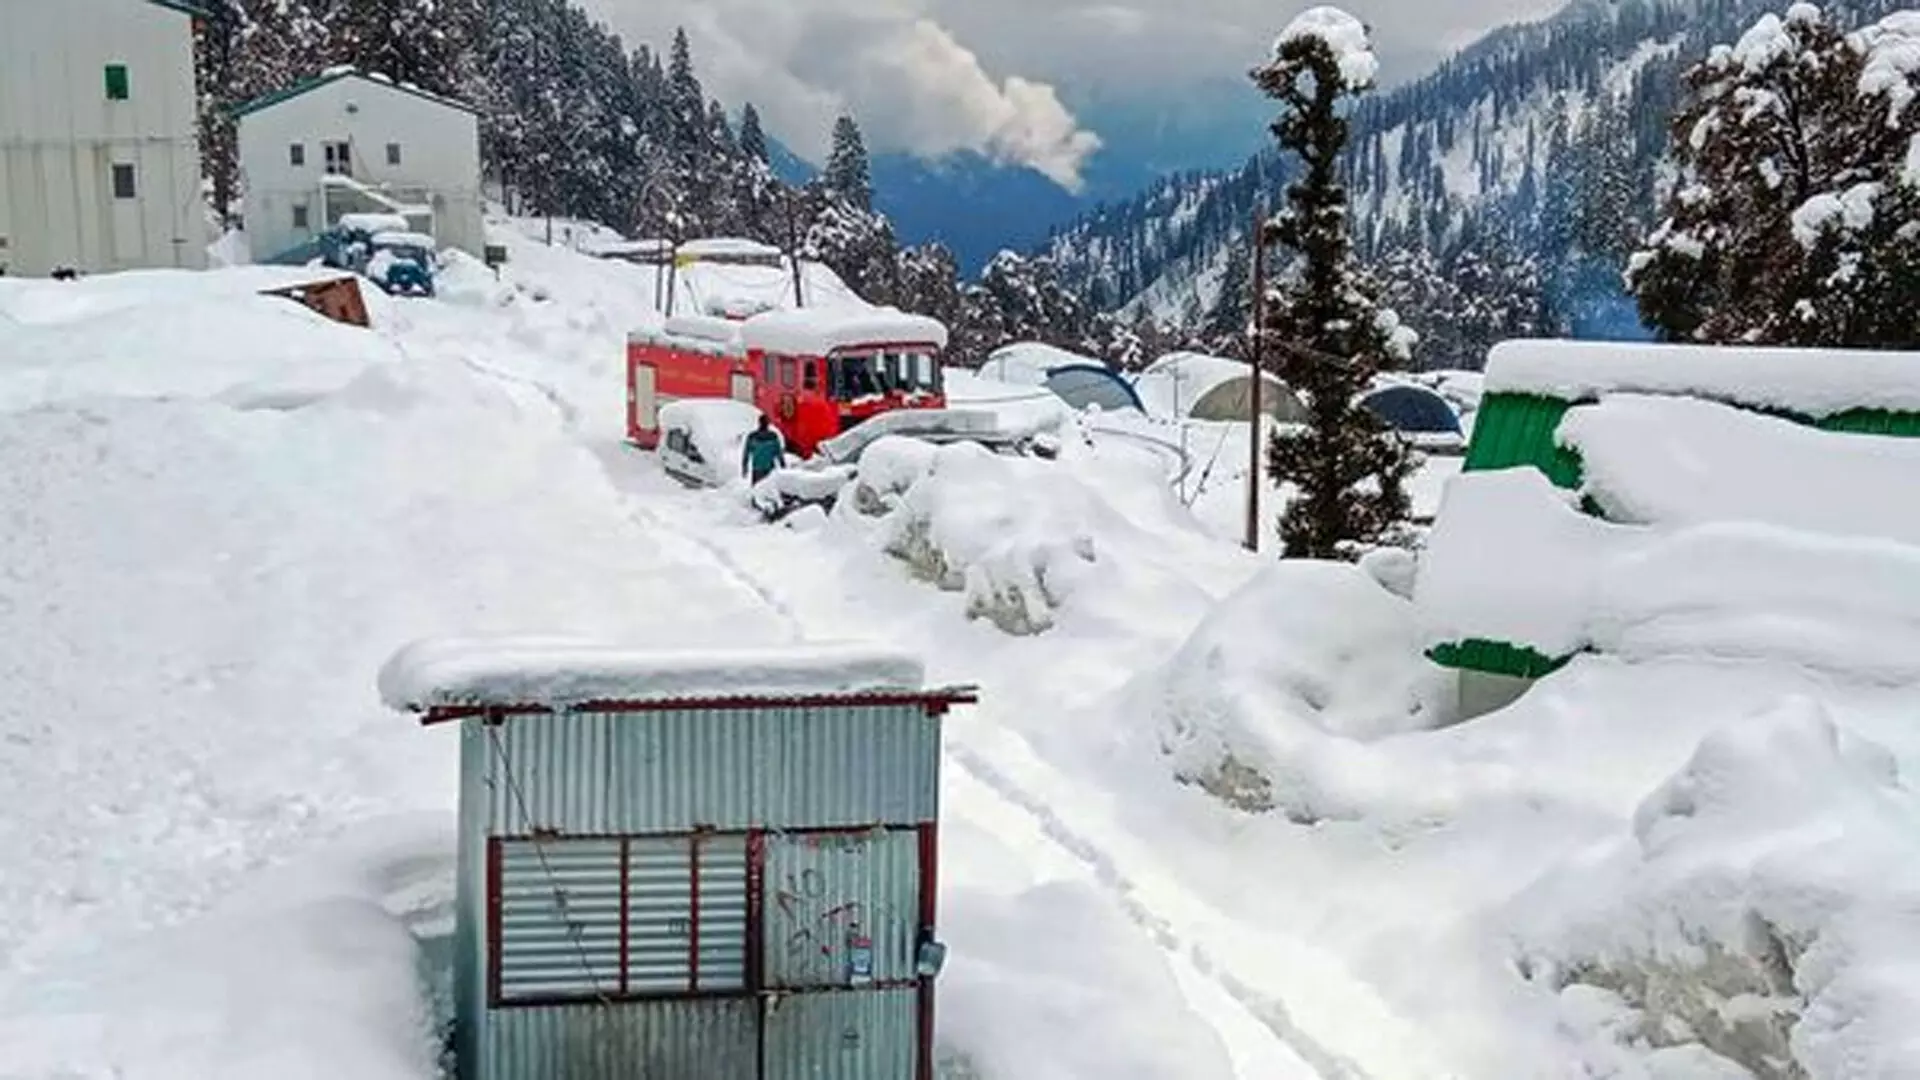 IMD ने हिमाचल, जम्मू-कश्मीर में बर्फबारी, भारी बारिश की भविष्यवाणी की, लाहौल और स्पीति में हिमस्खलन की सलाह जारी